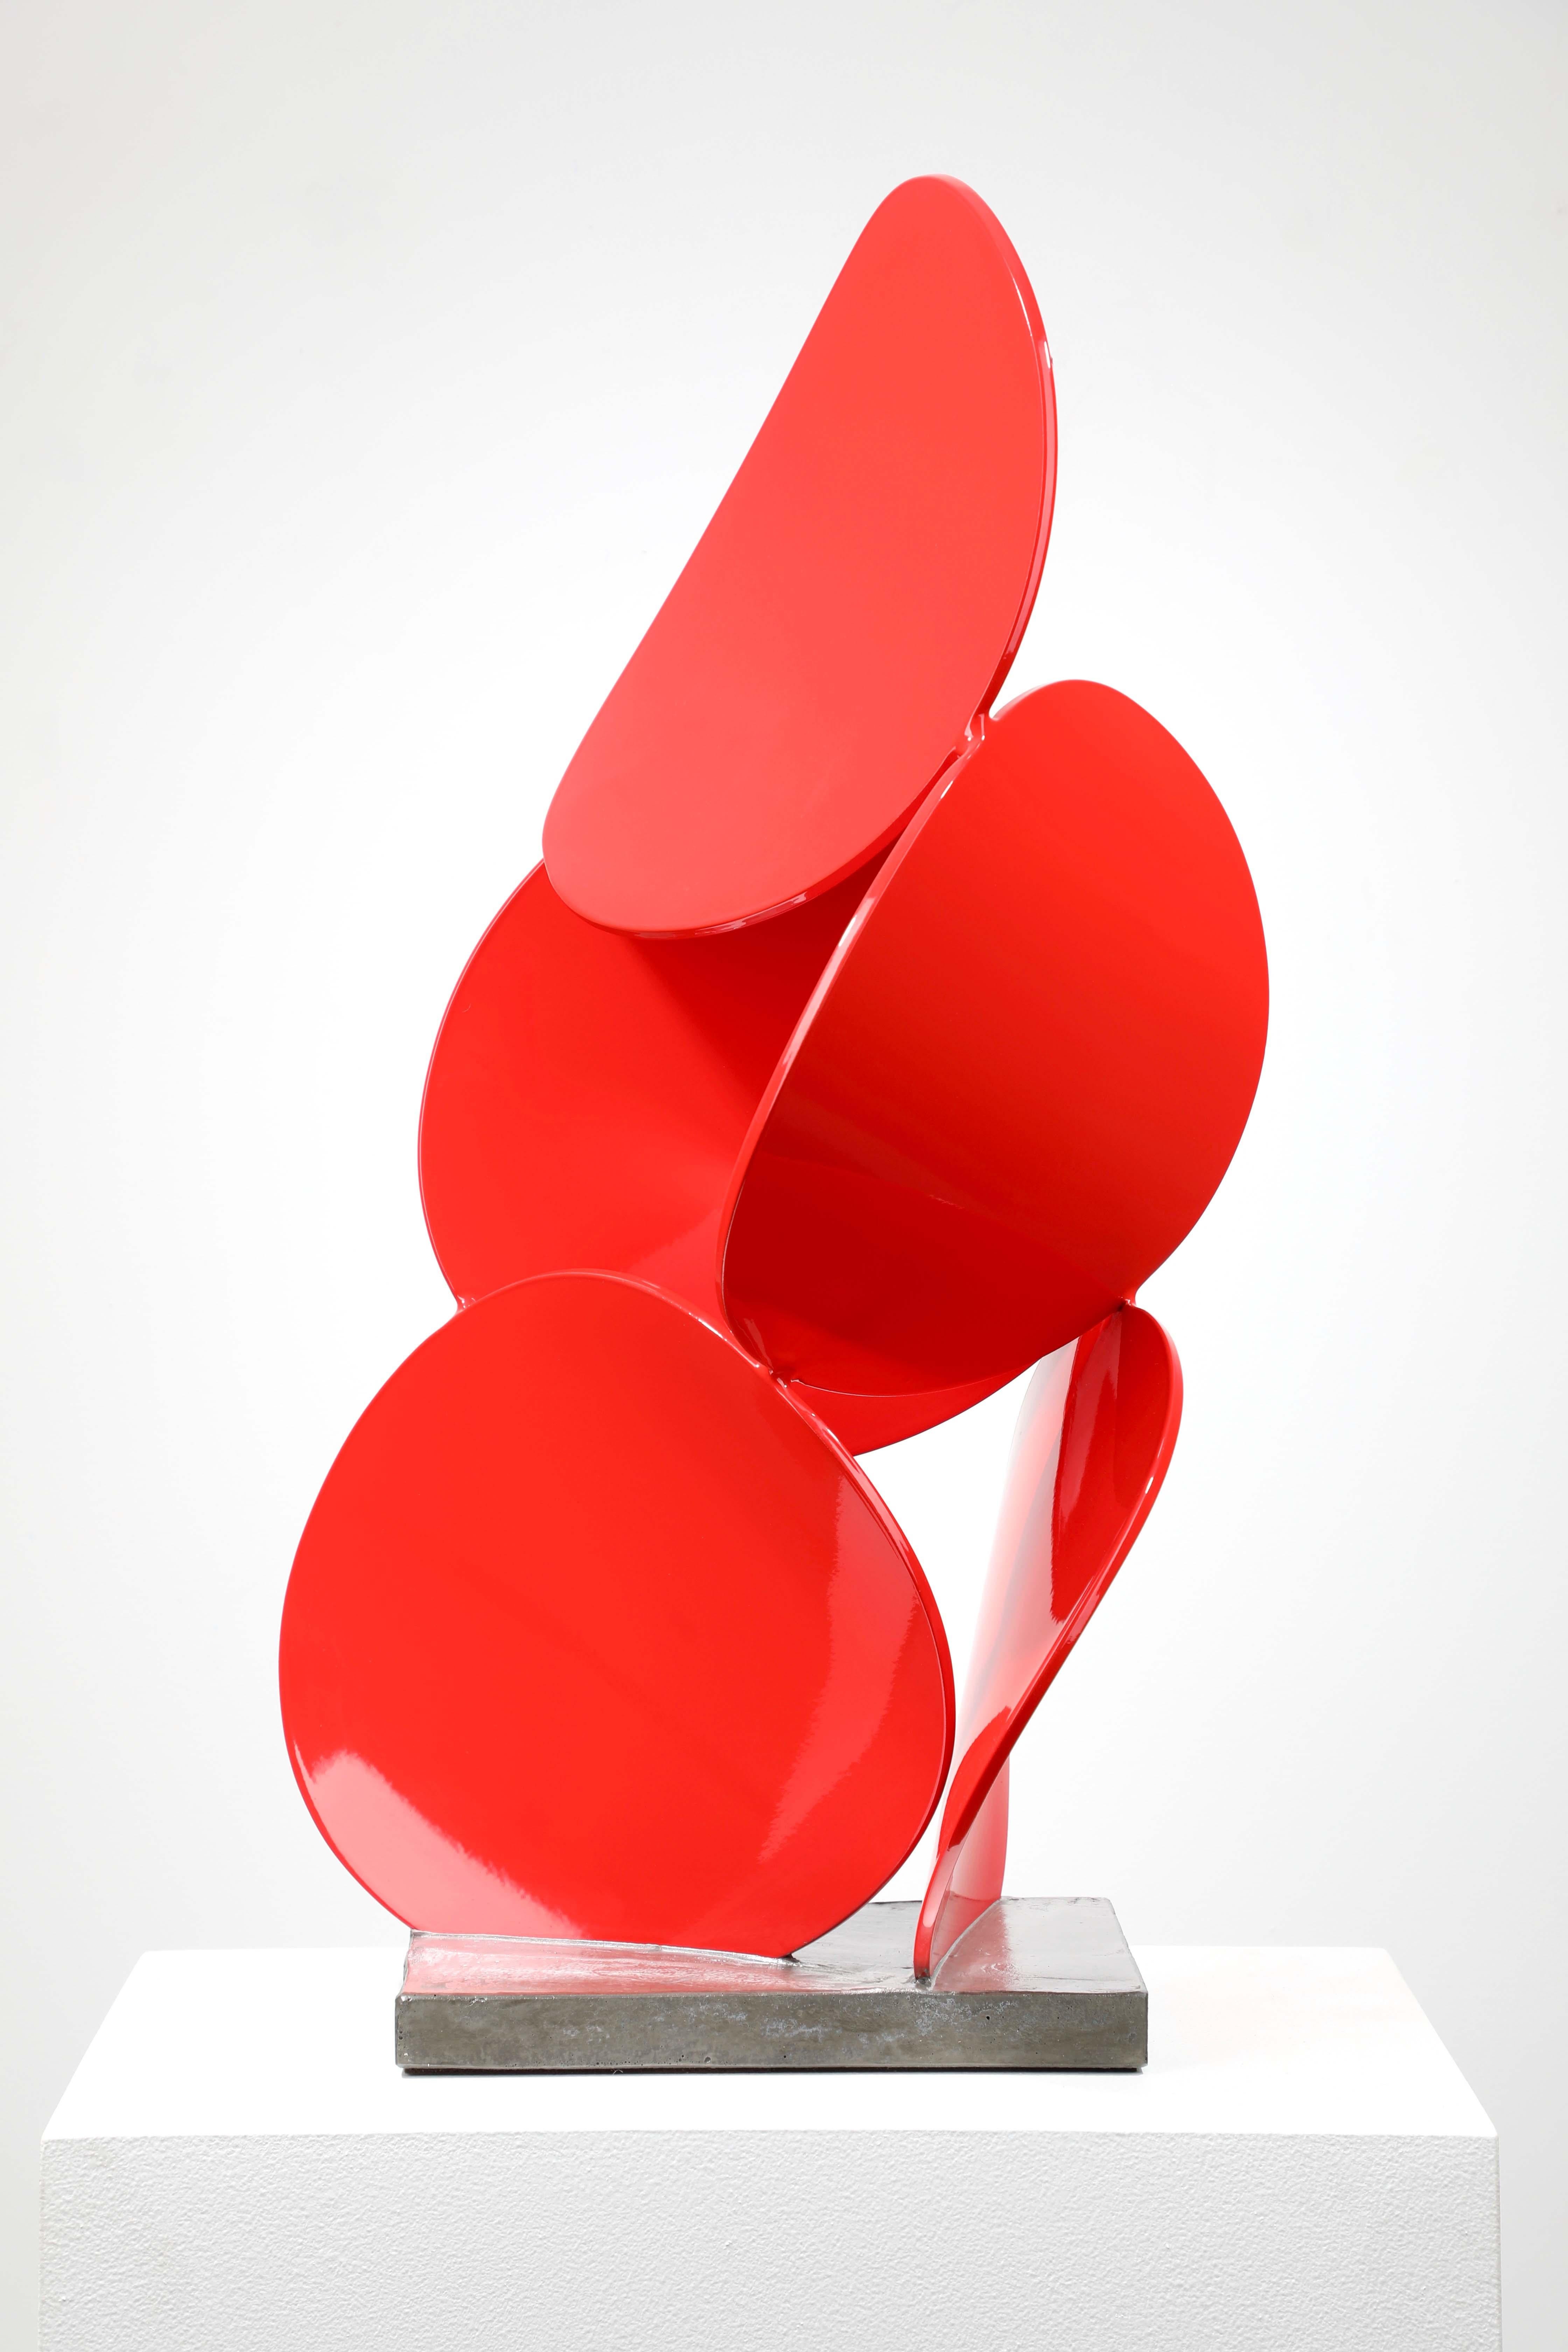 Matt Devine Abstract Sculpture – B x B #12